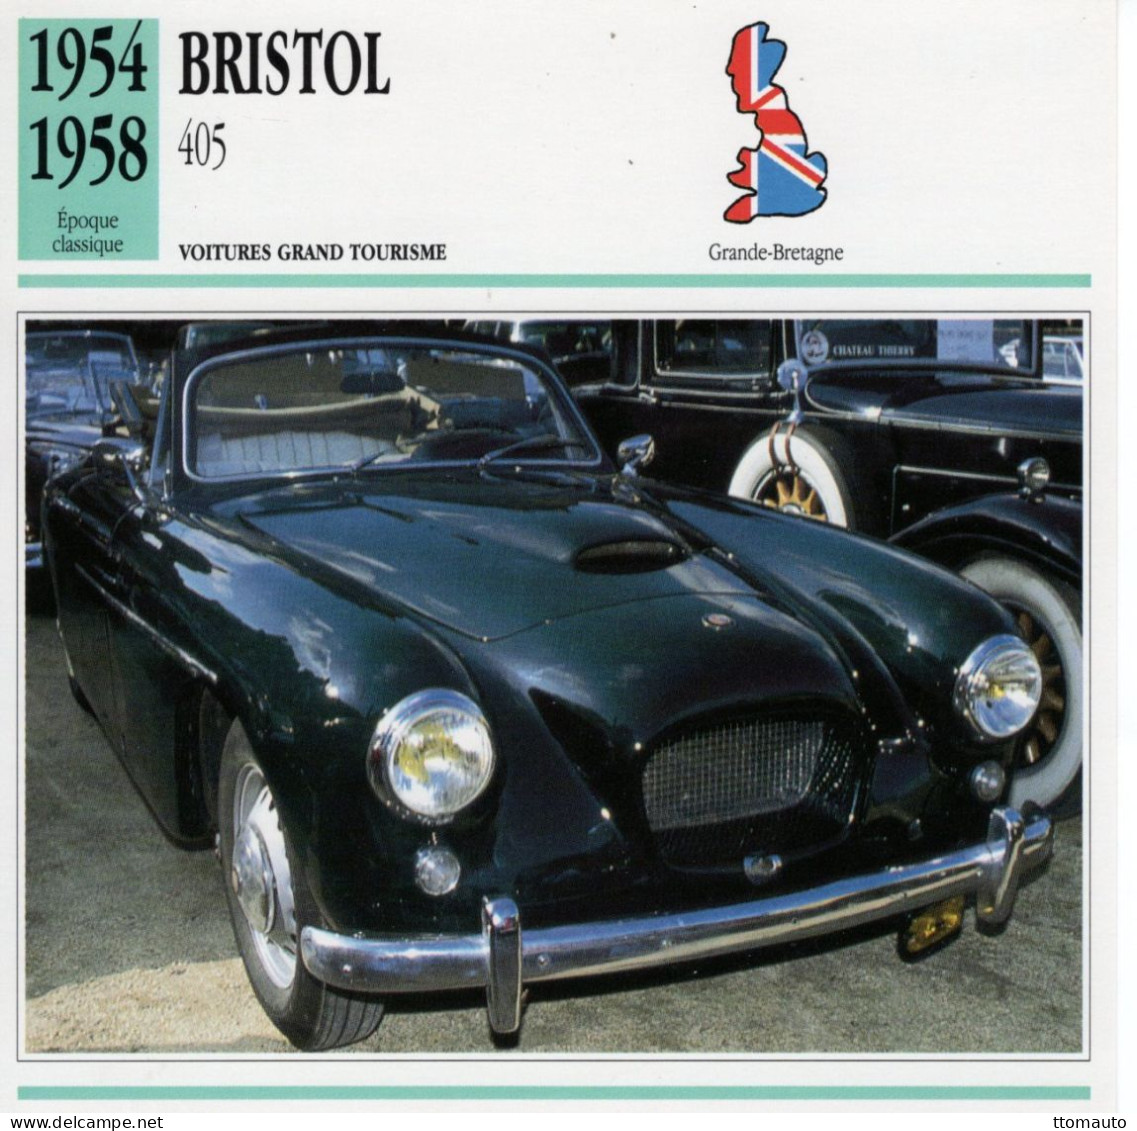 Bristol 405  -  1956  - Voiture Grand Tourisme -  Fiche Technique Automobile (GB) - Autos